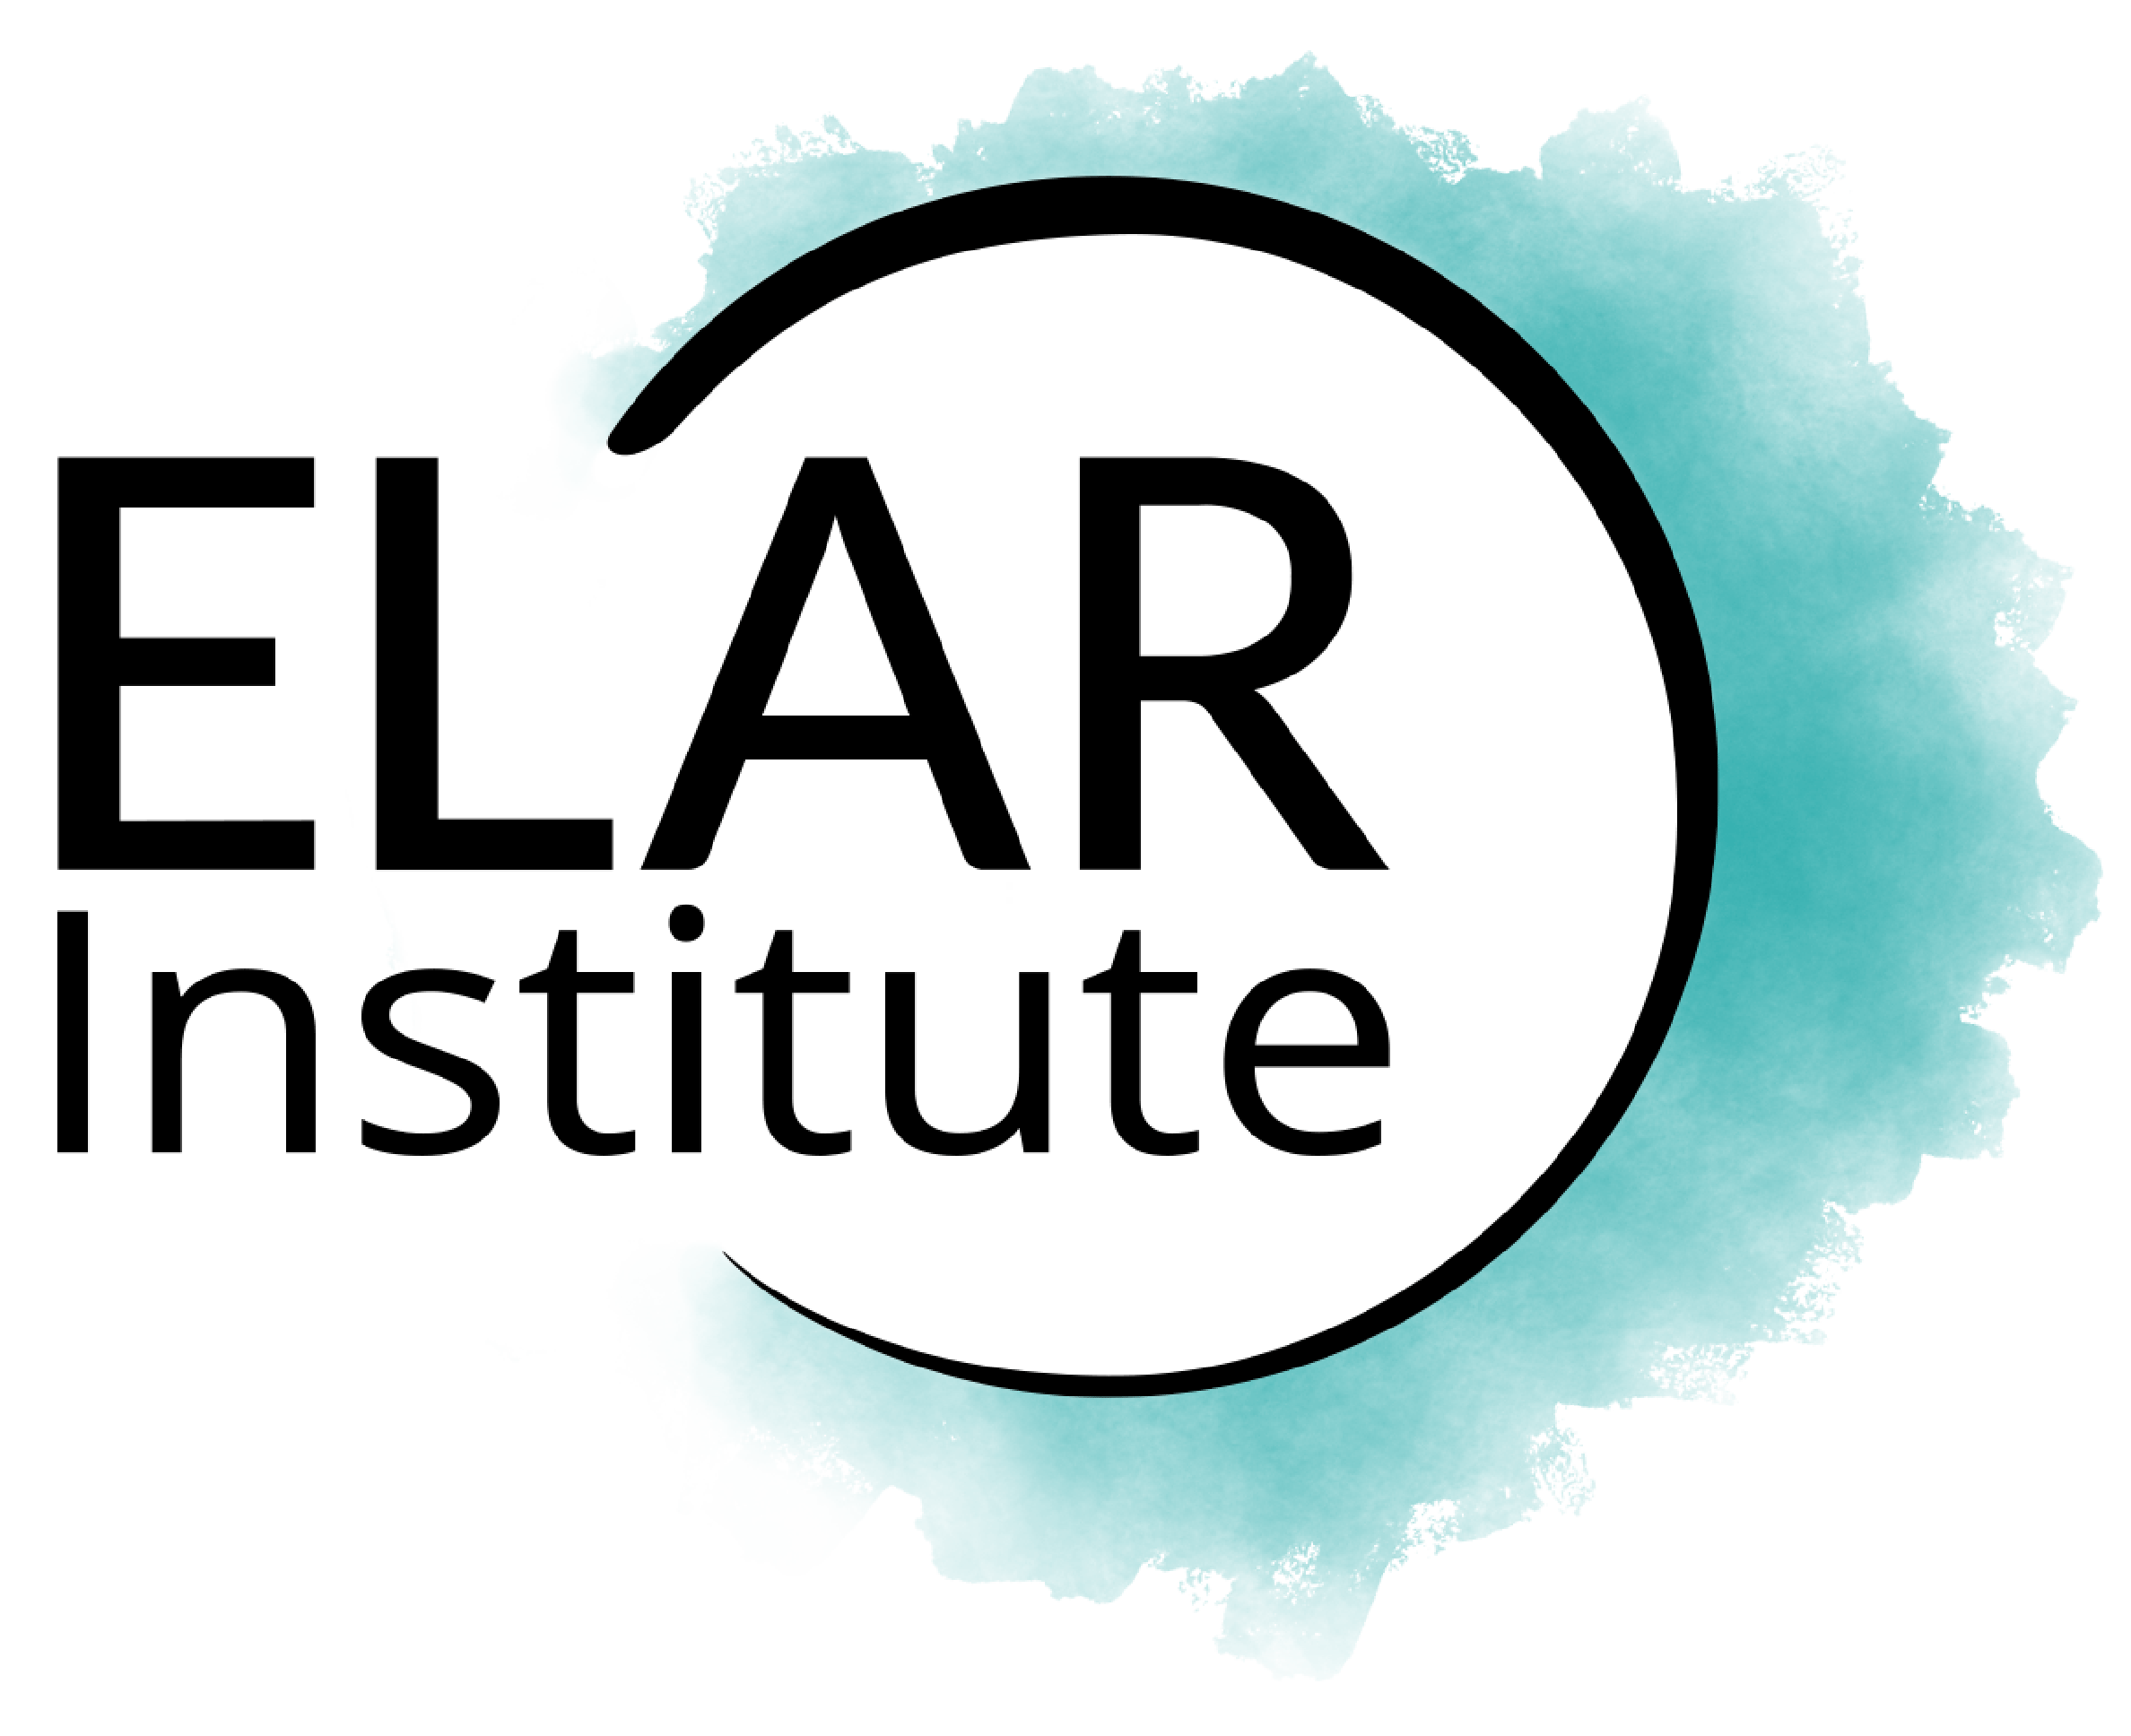 Elar Institute